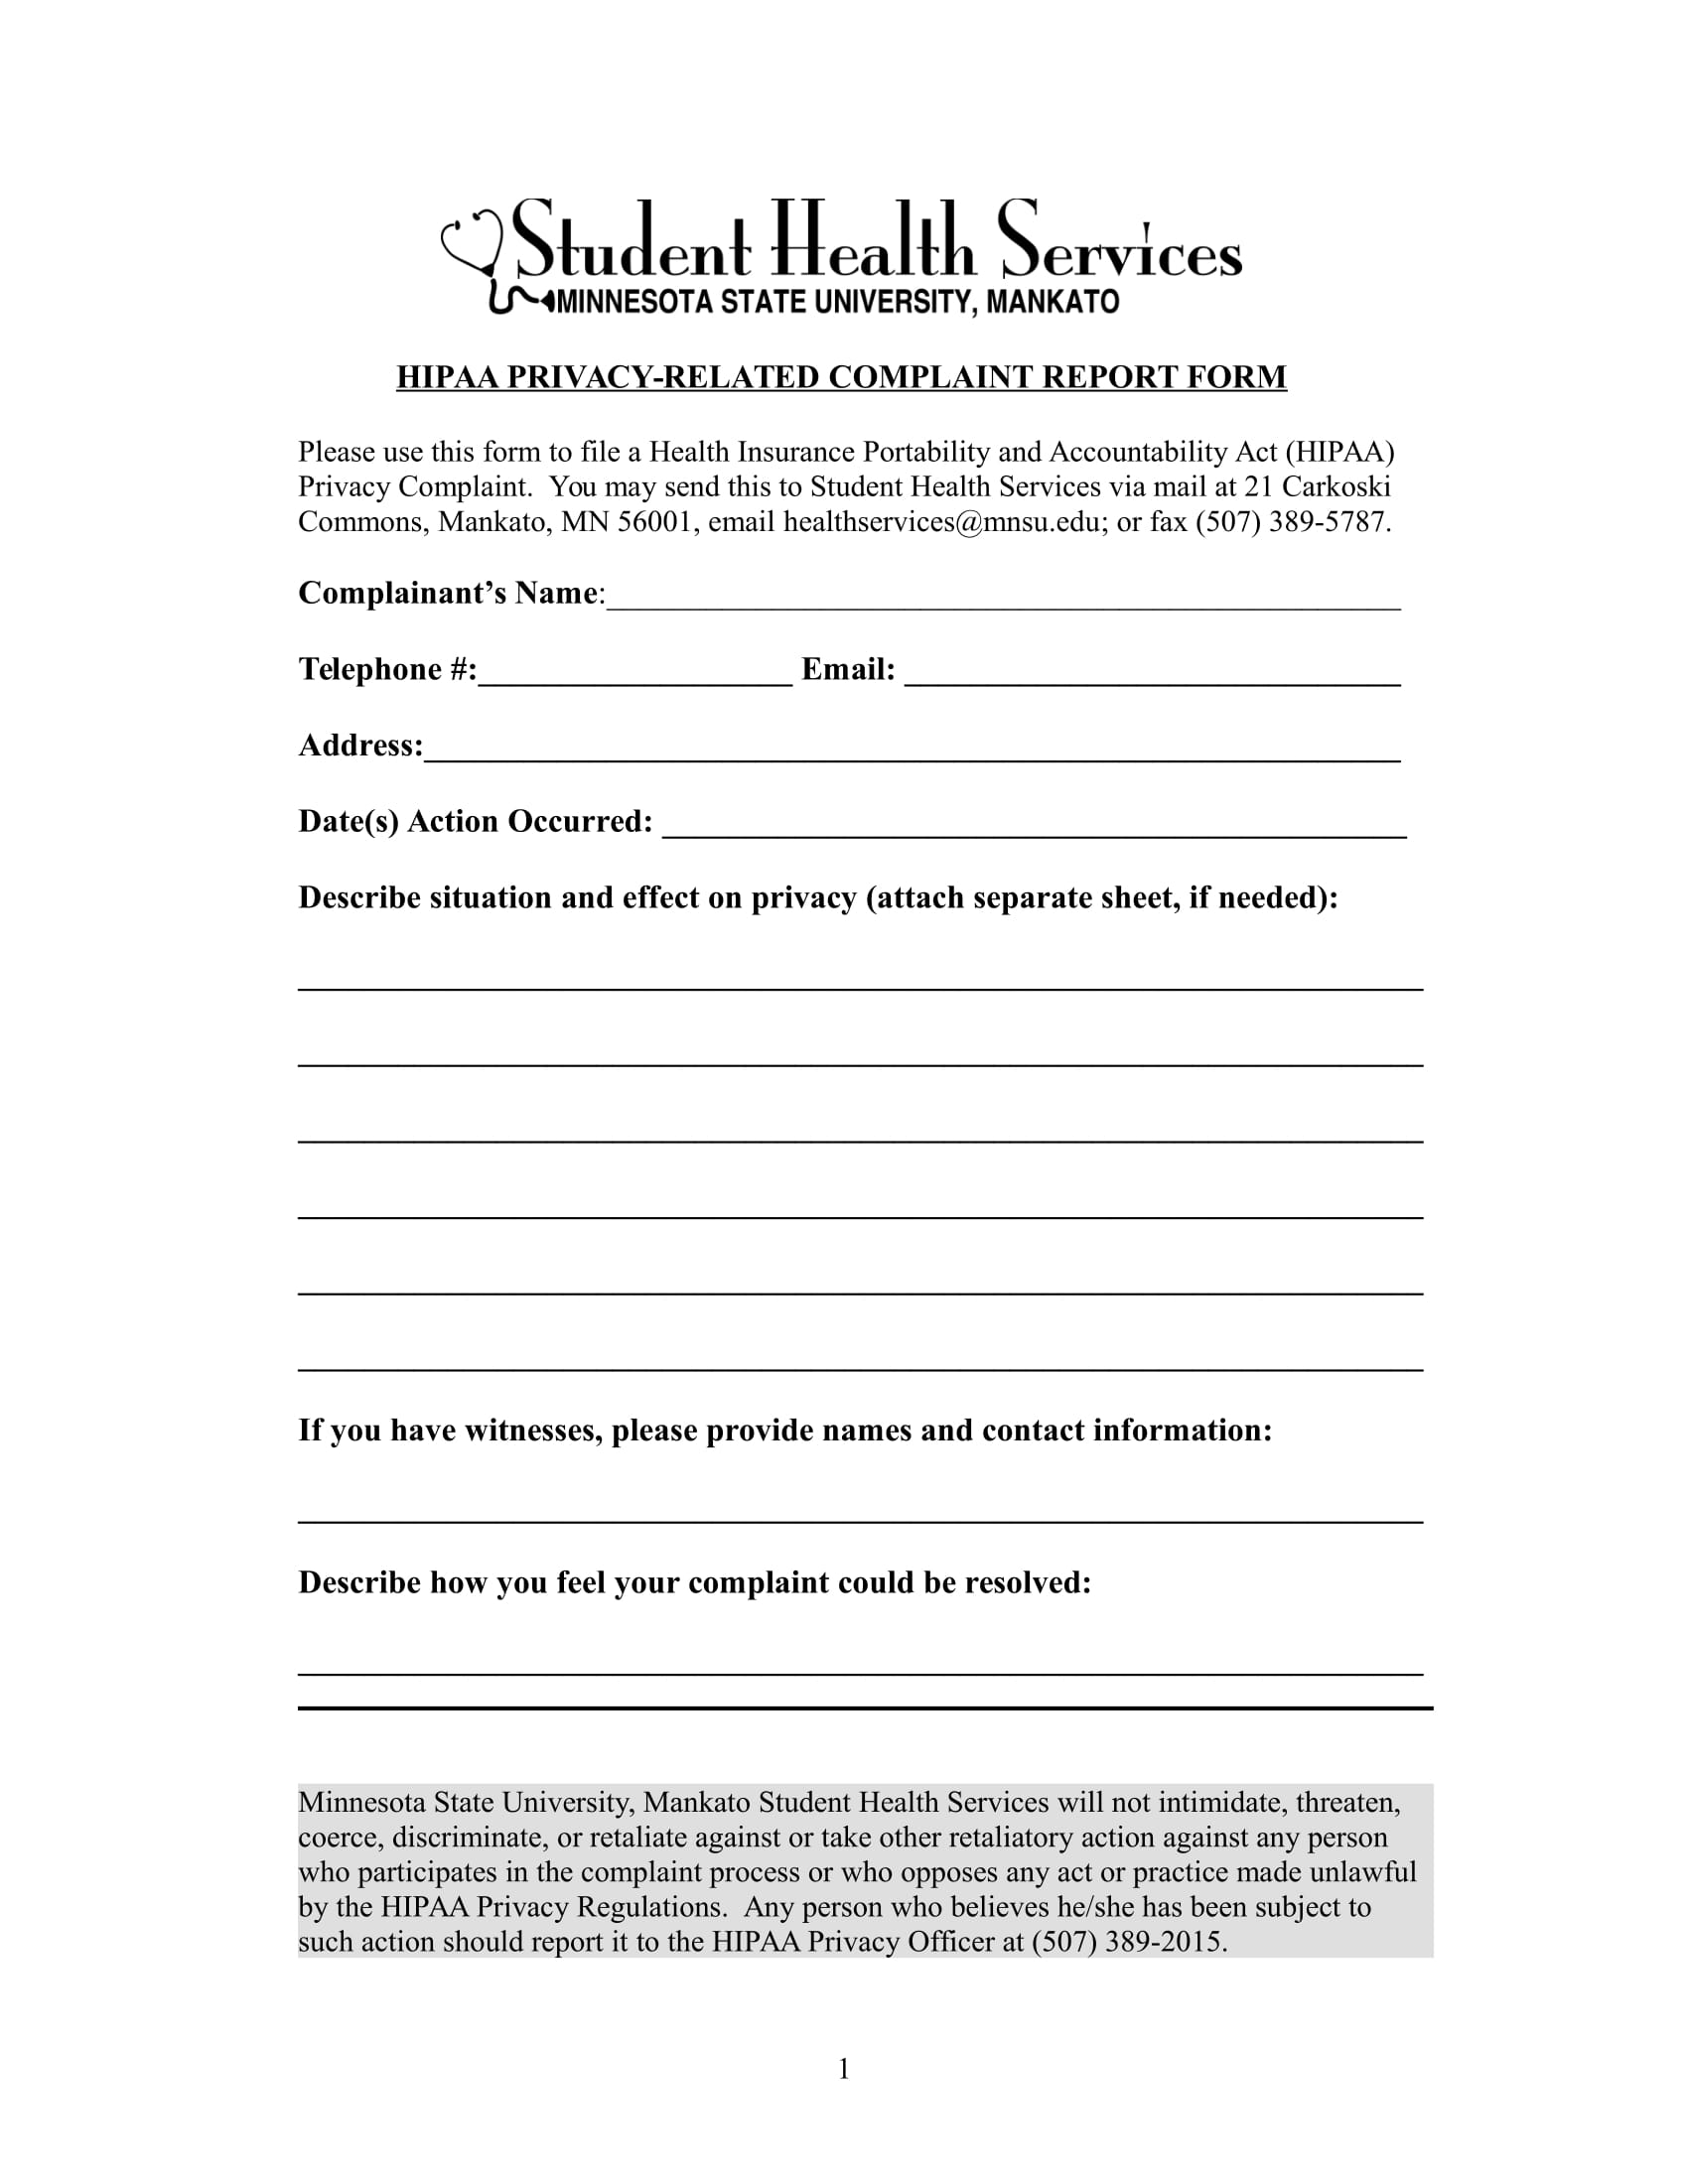 patient complaint report form 1